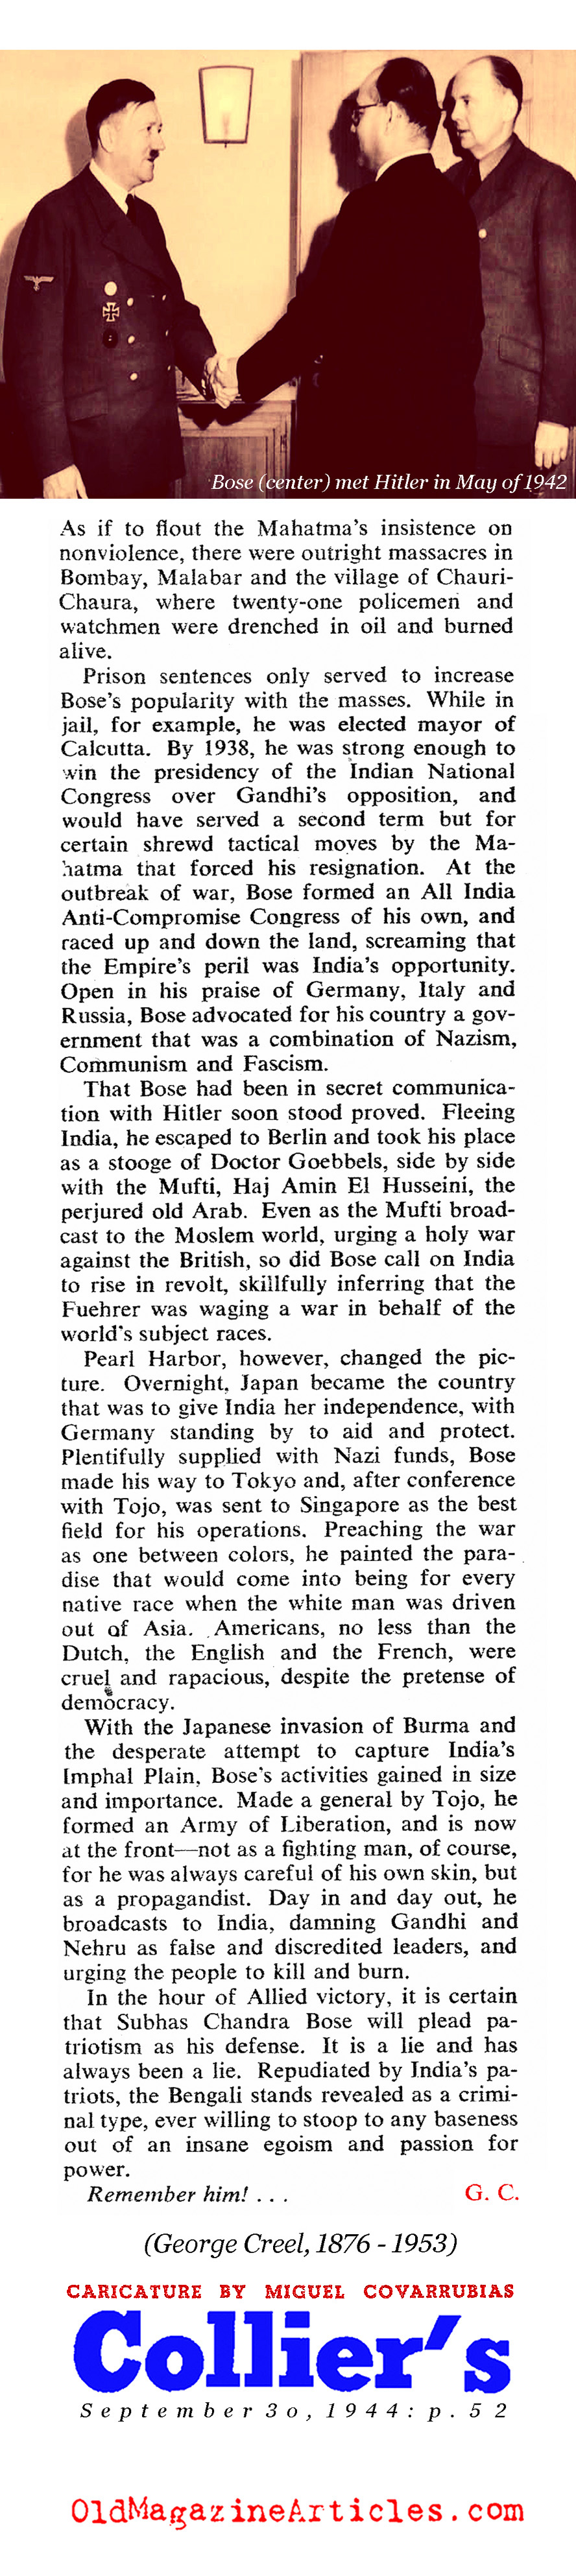 Hitler's Man in Delhi (Collier's Magazine, 1944)